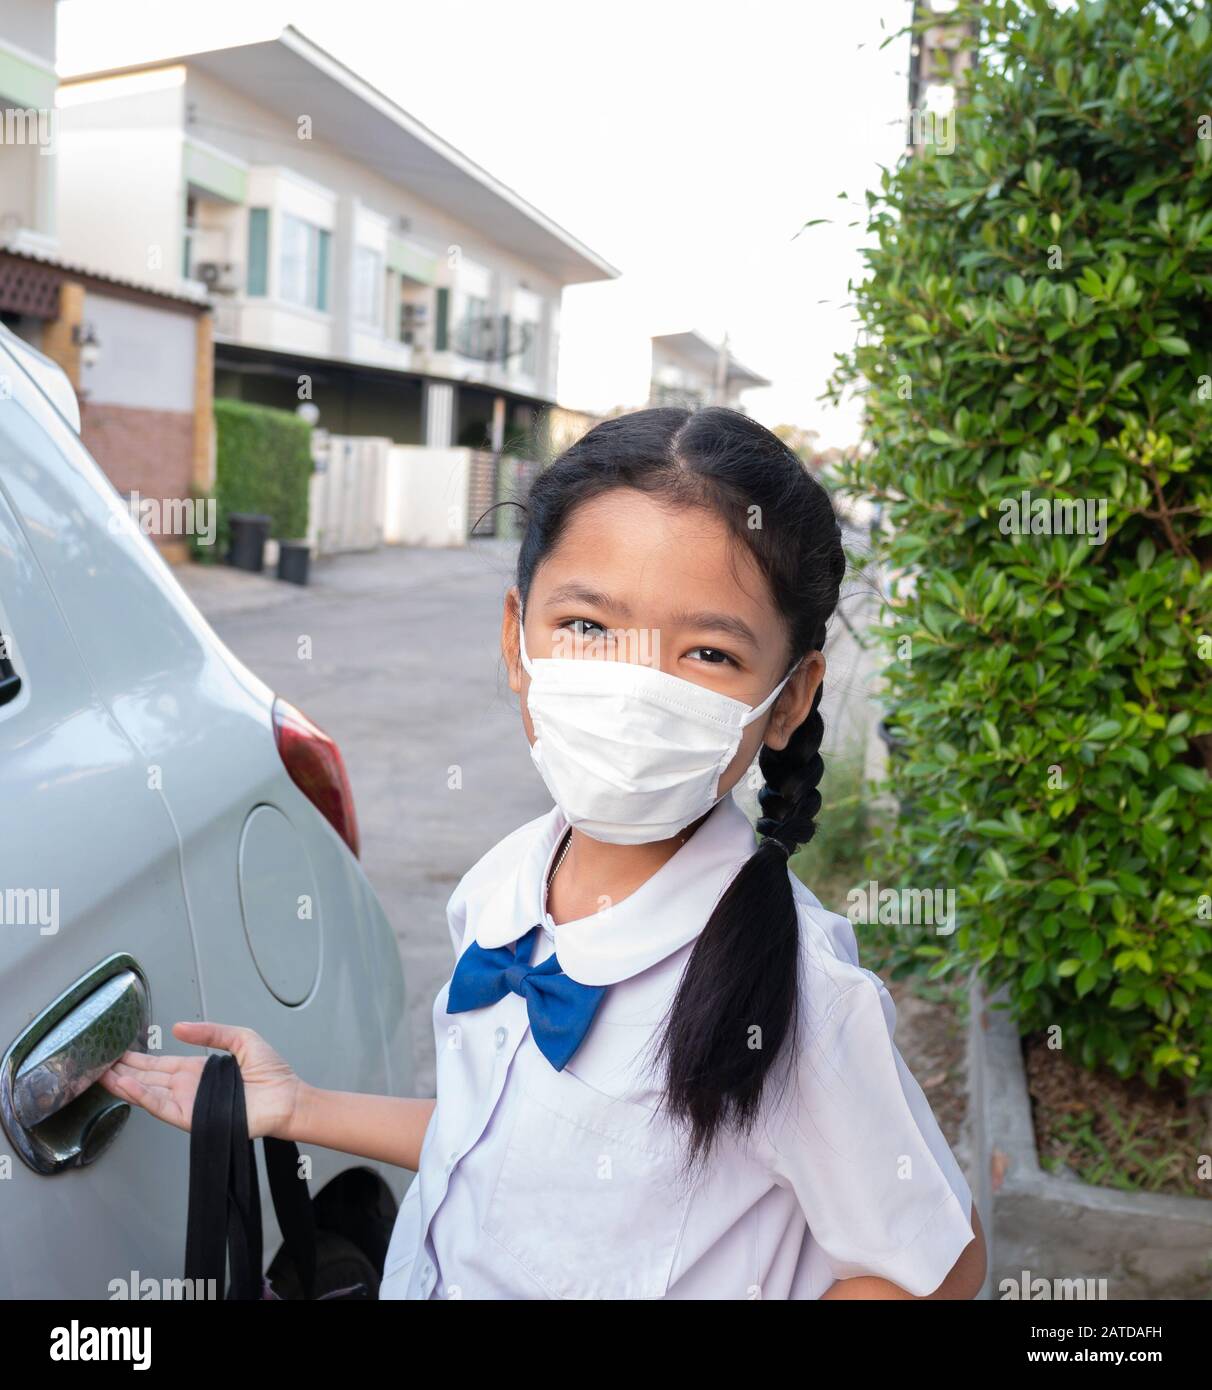 Ein kleines asiatisches Mädchen trägt eine Uniform und eine Maske, wenn es zur Schule geht, um Keime zu verhindern. Stockfoto